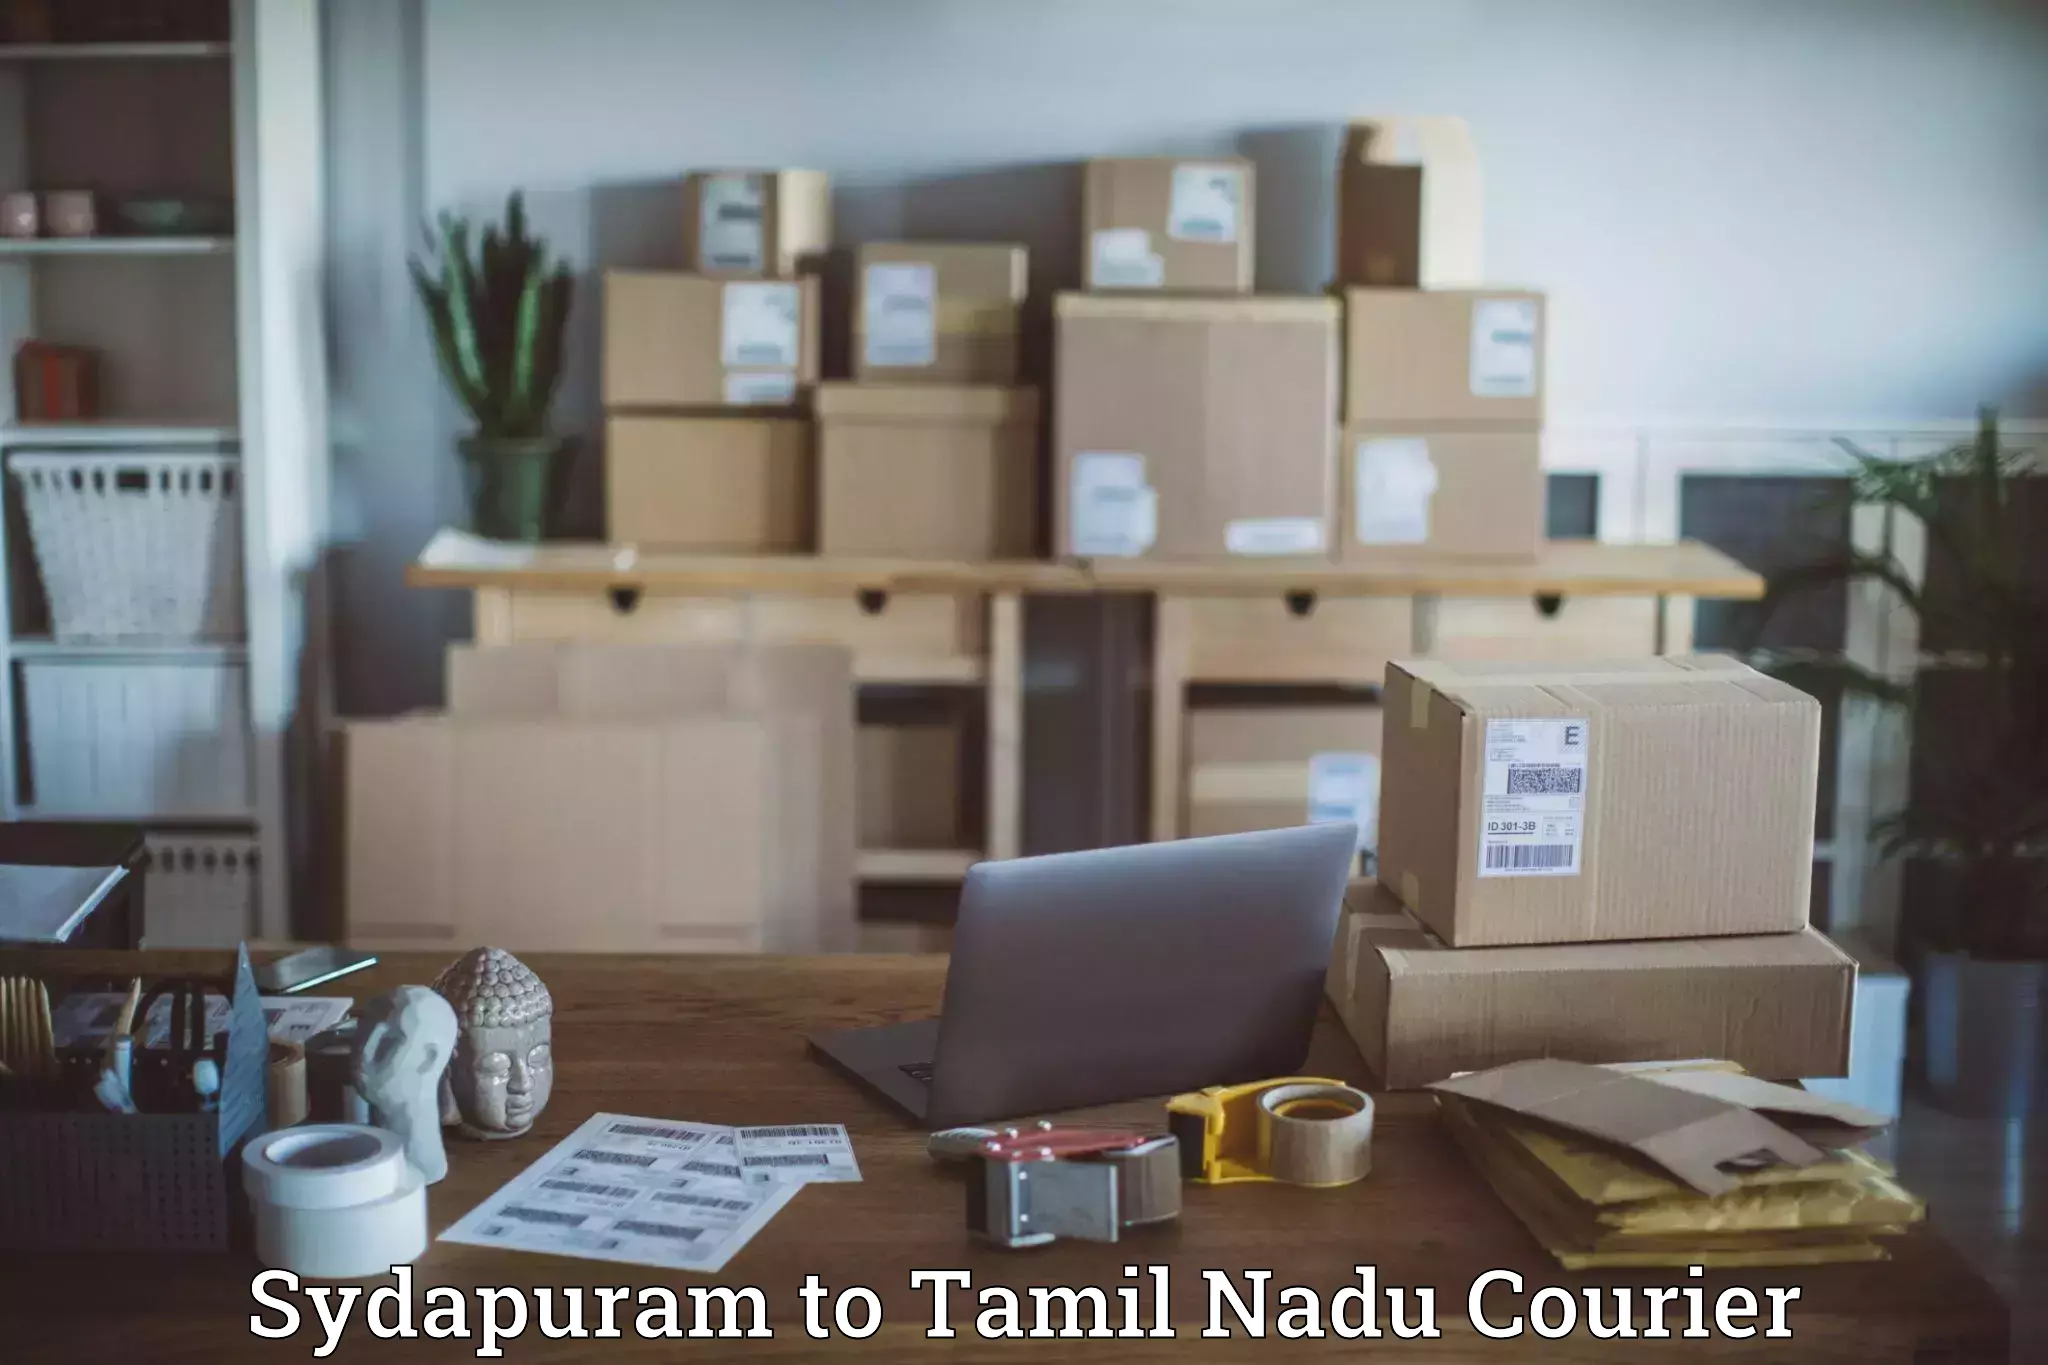 Next-generation courier services Sydapuram to Tamil Nadu